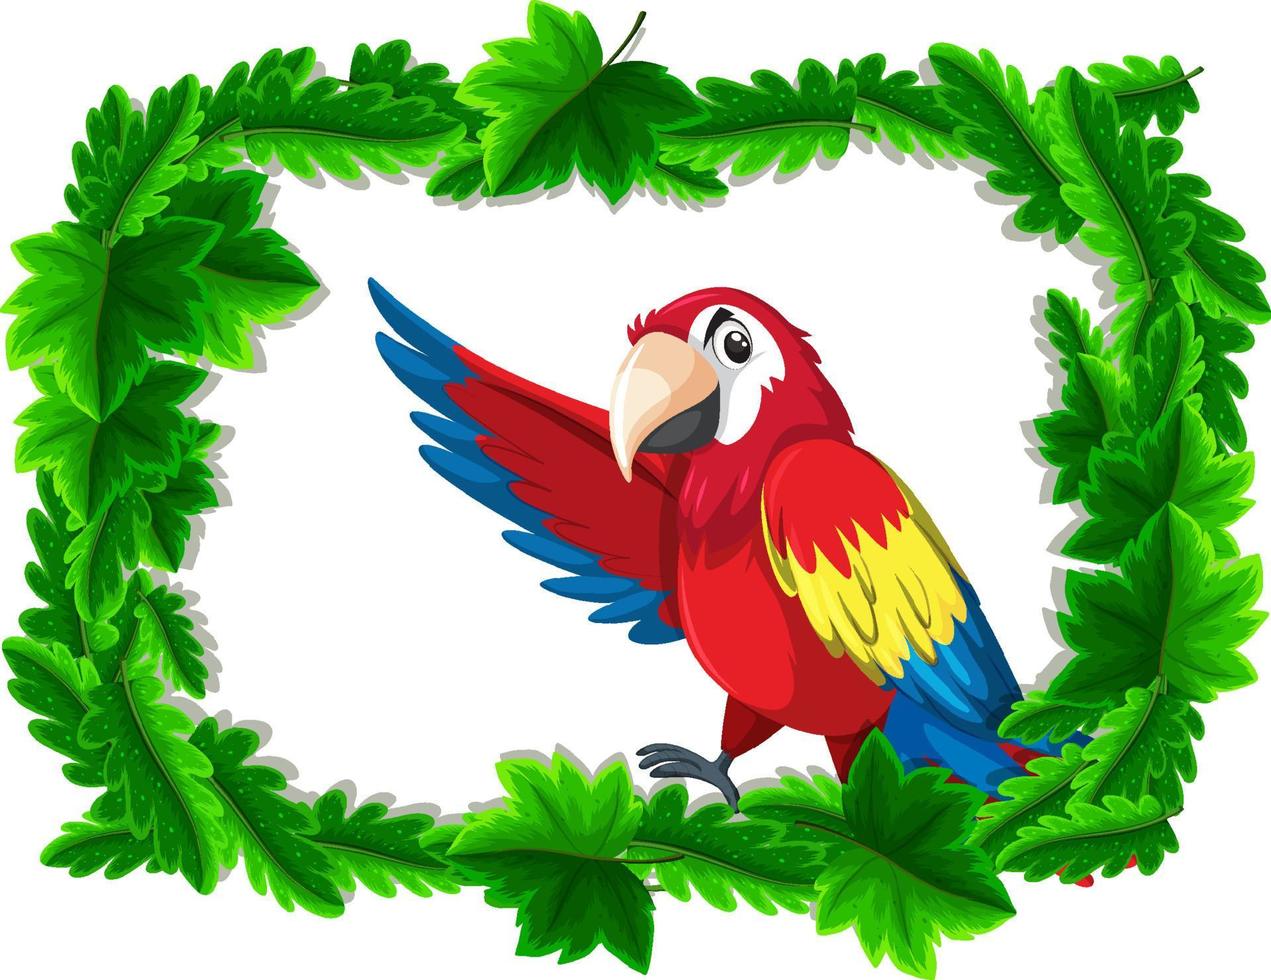 bannière vide avec cadre de feuilles tropicales et personnage de dessin animé oiseau perroquet vecteur